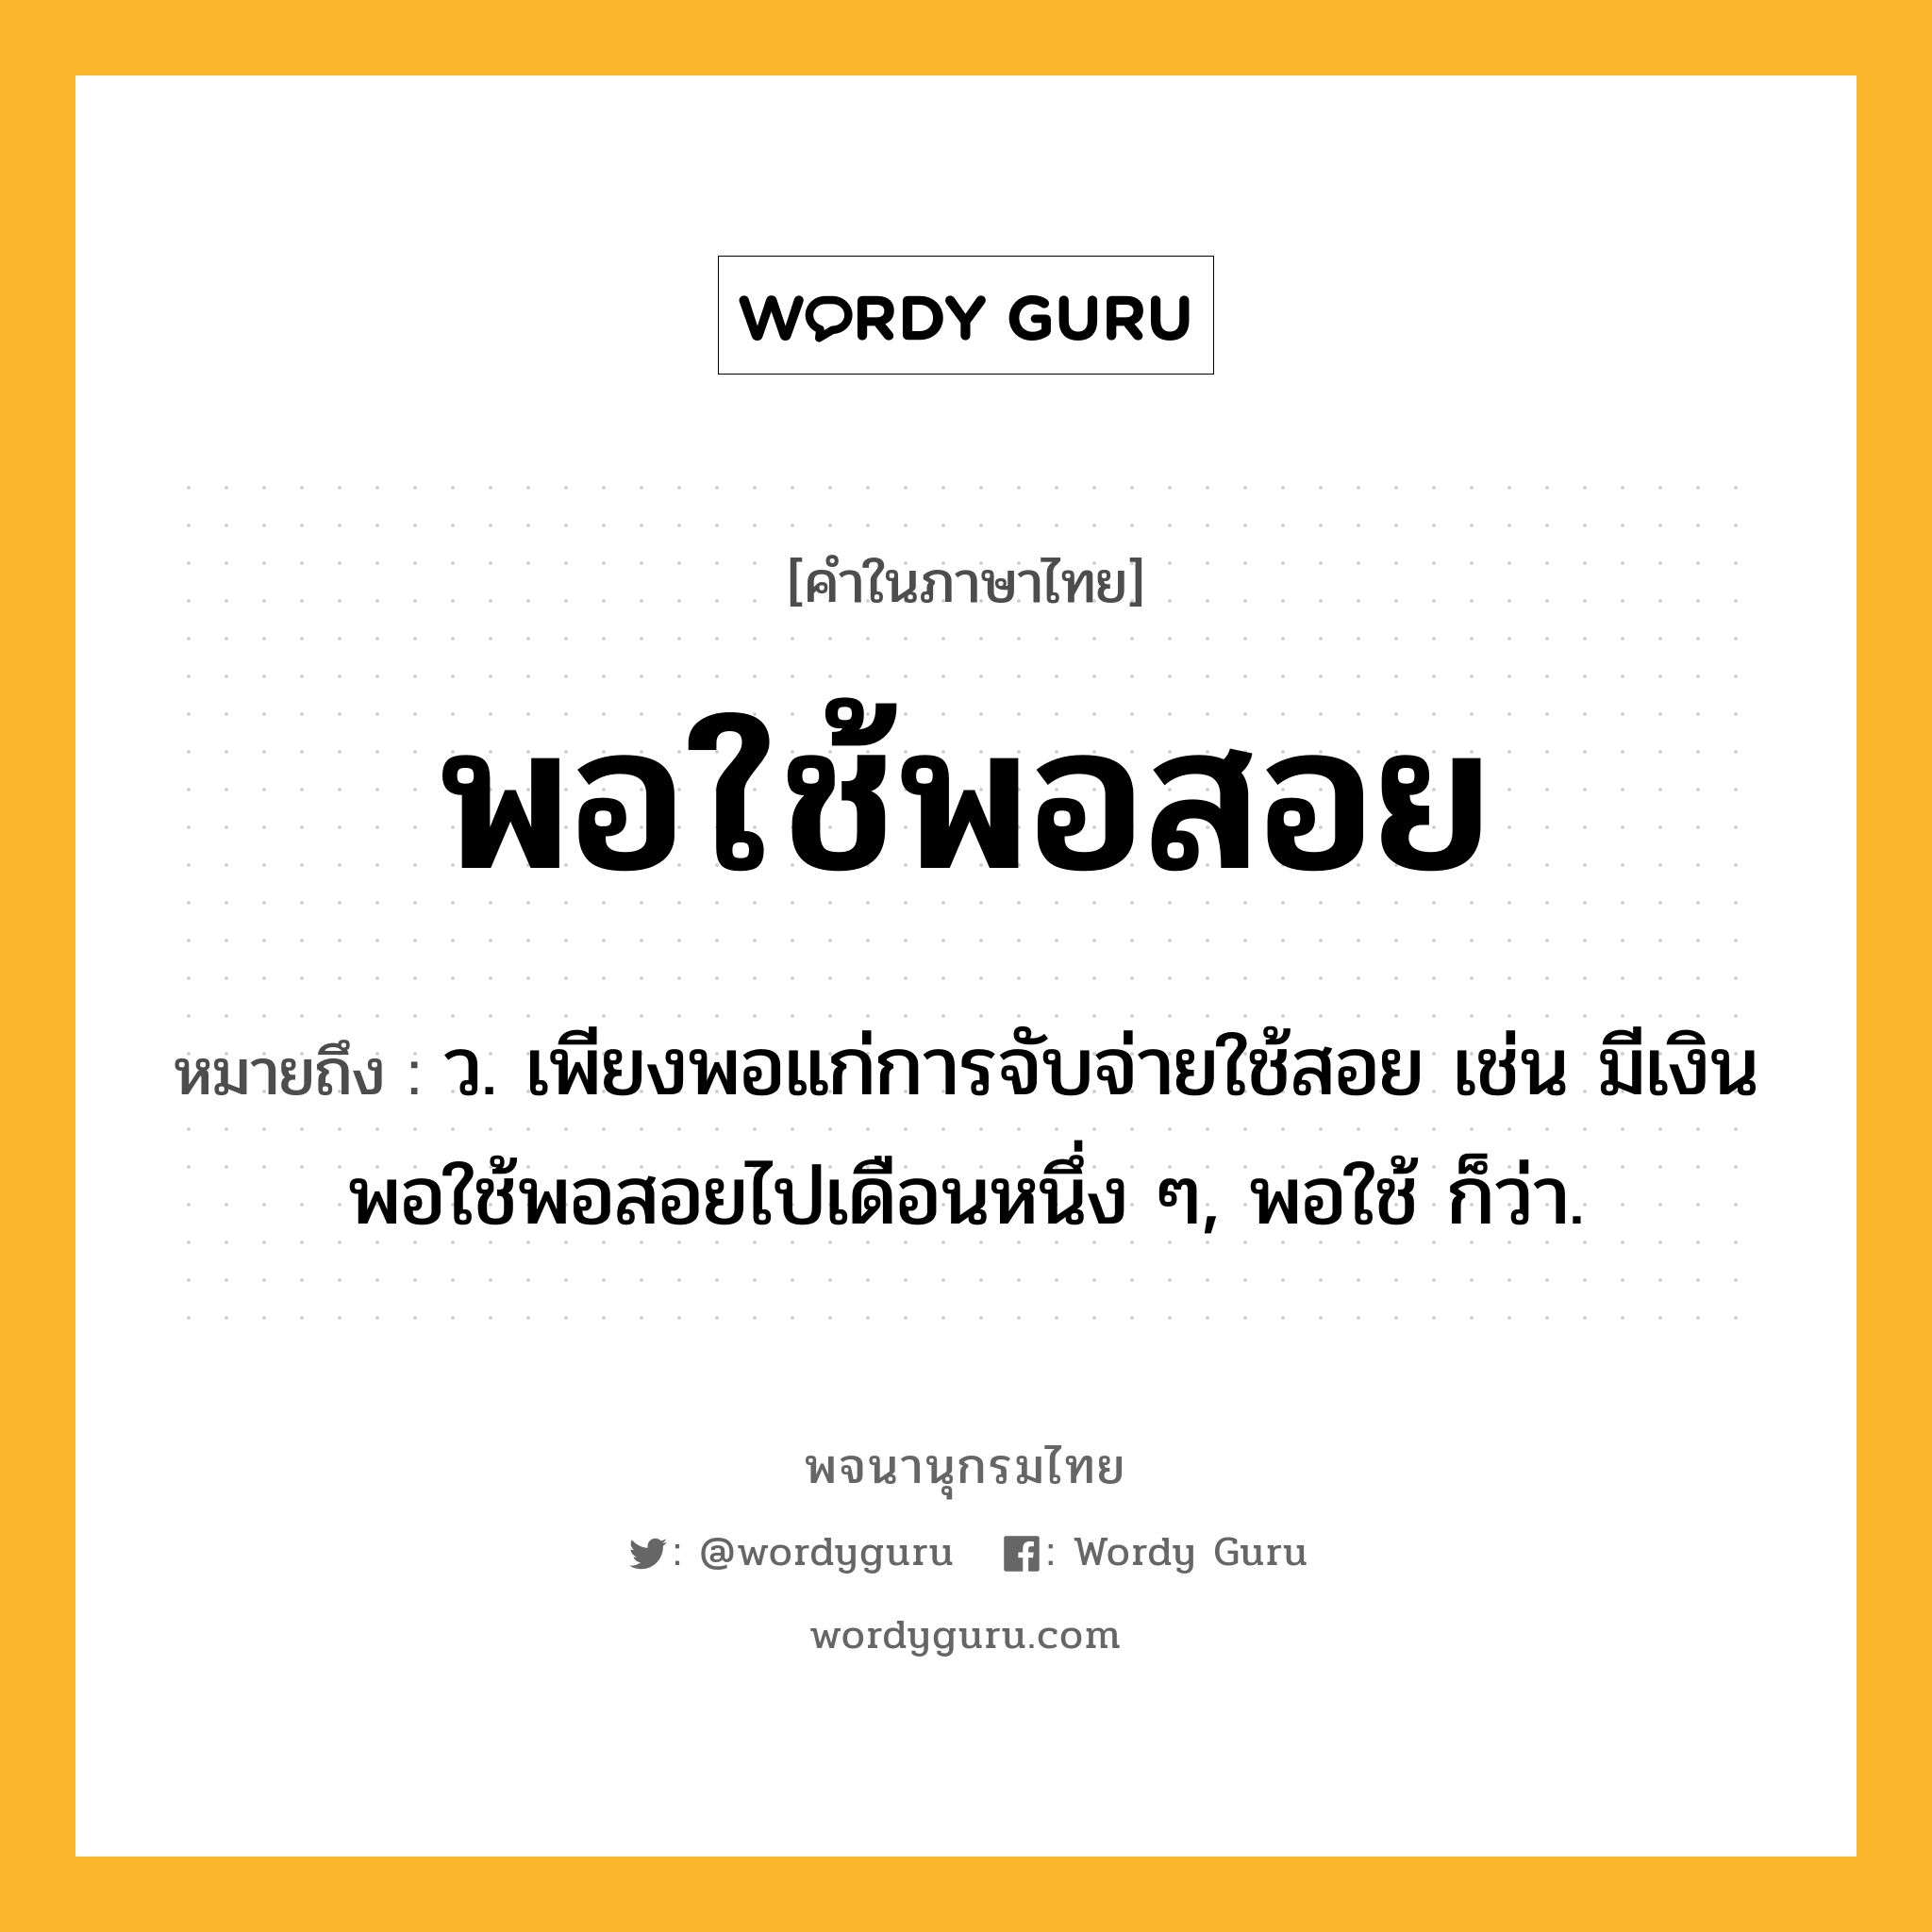 พอใช้พอสอย ความหมาย หมายถึงอะไร?, คำในภาษาไทย พอใช้พอสอย หมายถึง ว. เพียงพอแก่การจับจ่ายใช้สอย เช่น มีเงินพอใช้พอสอยไปเดือนหนึ่ง ๆ, พอใช้ ก็ว่า.